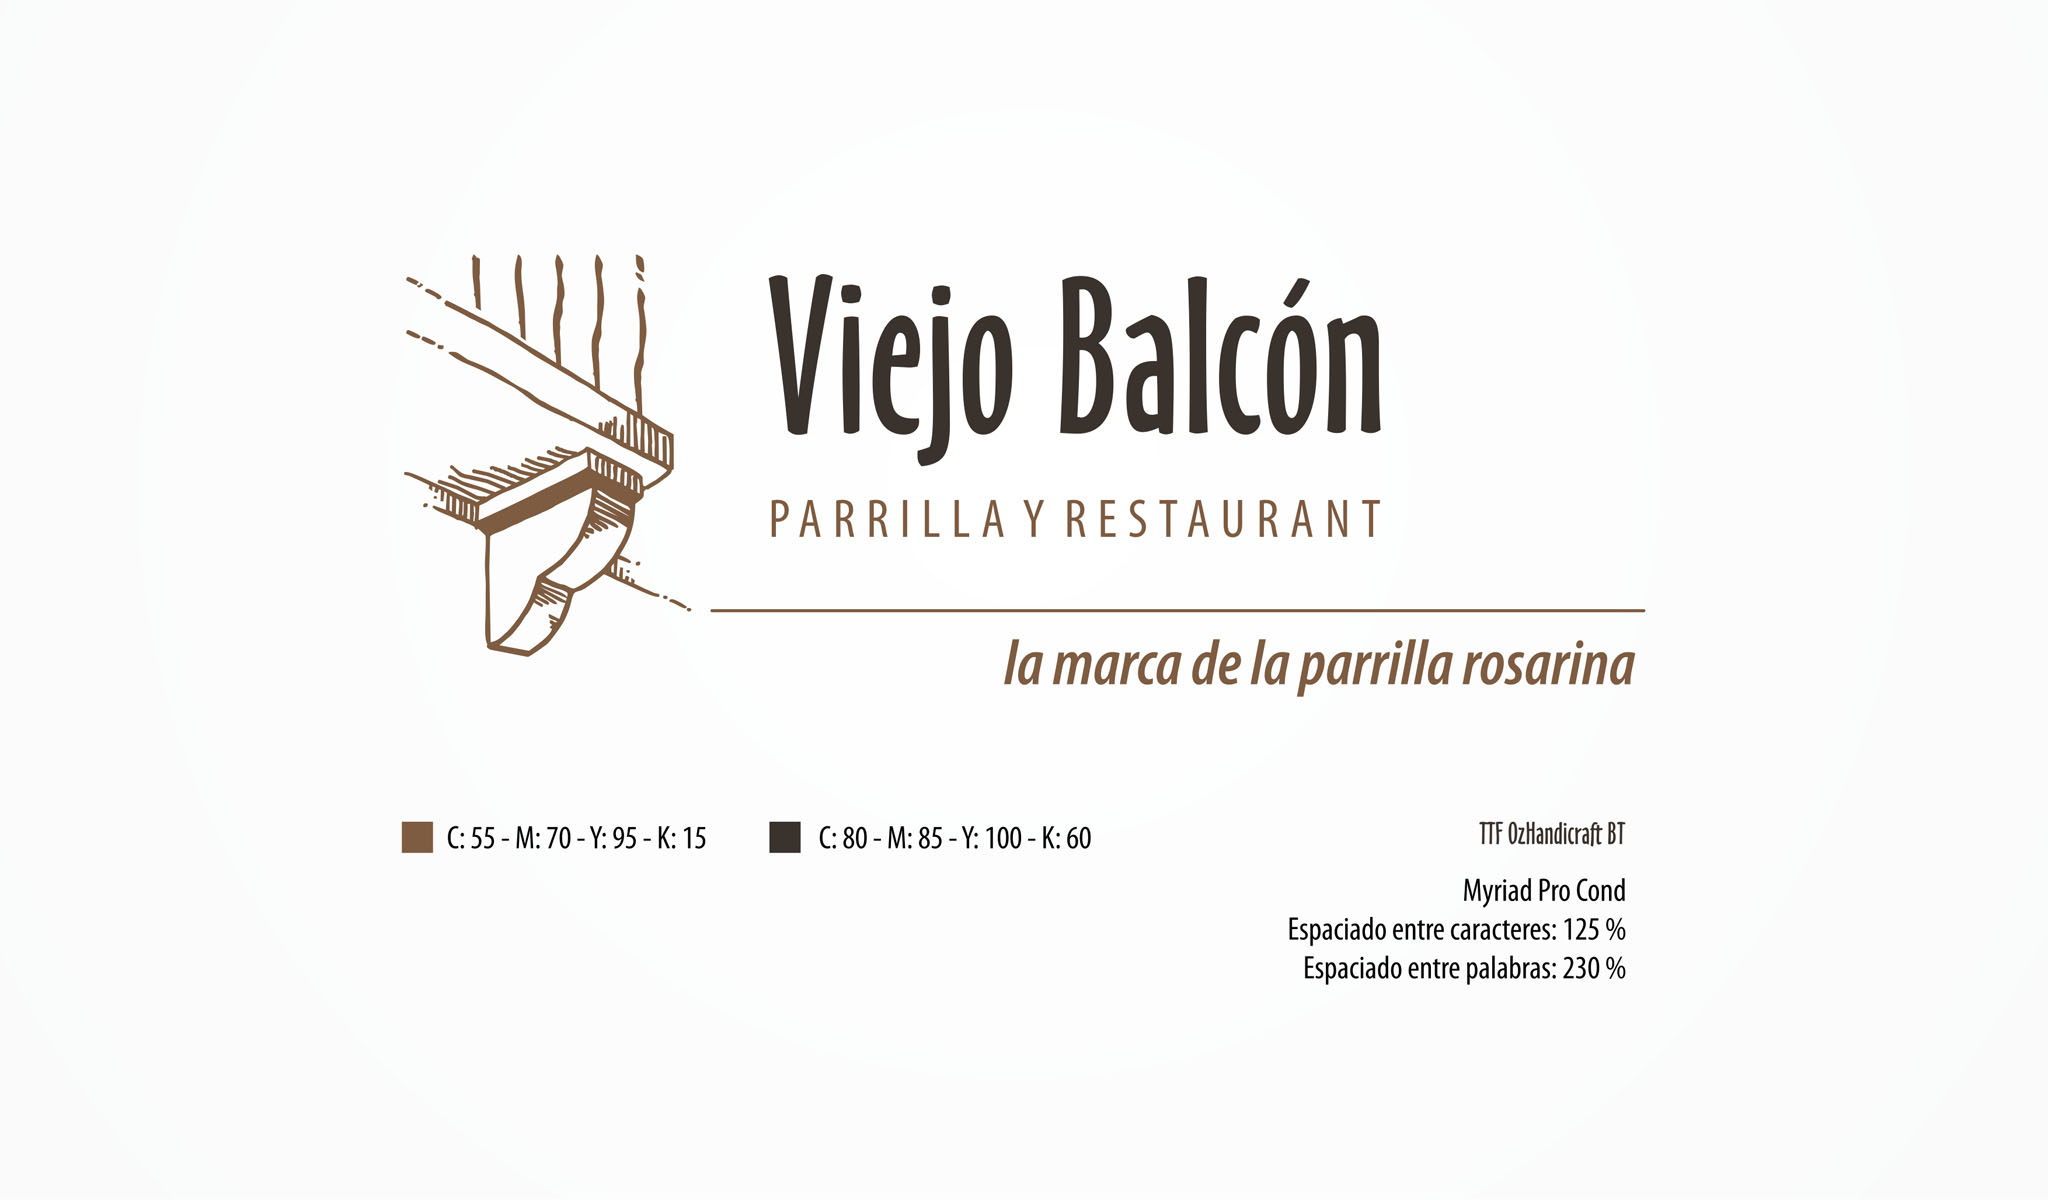 Viejo Balcón Parrilla y Restaurant